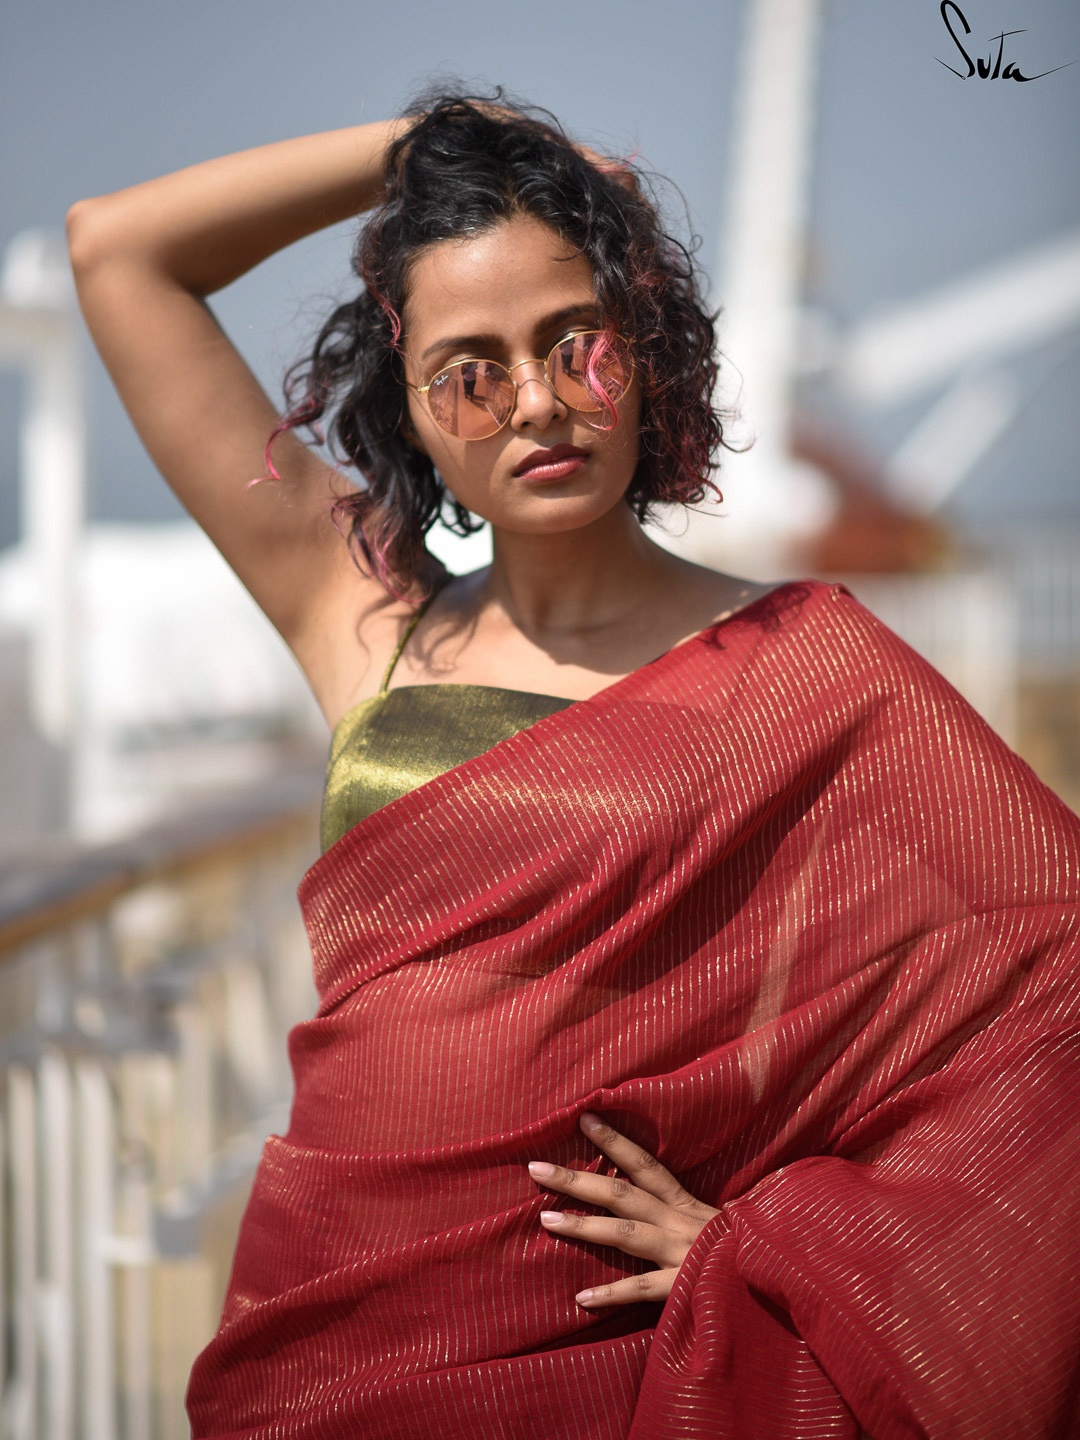 

Suta Red Woven Zari Striped Pure Handloom Cotton Saree